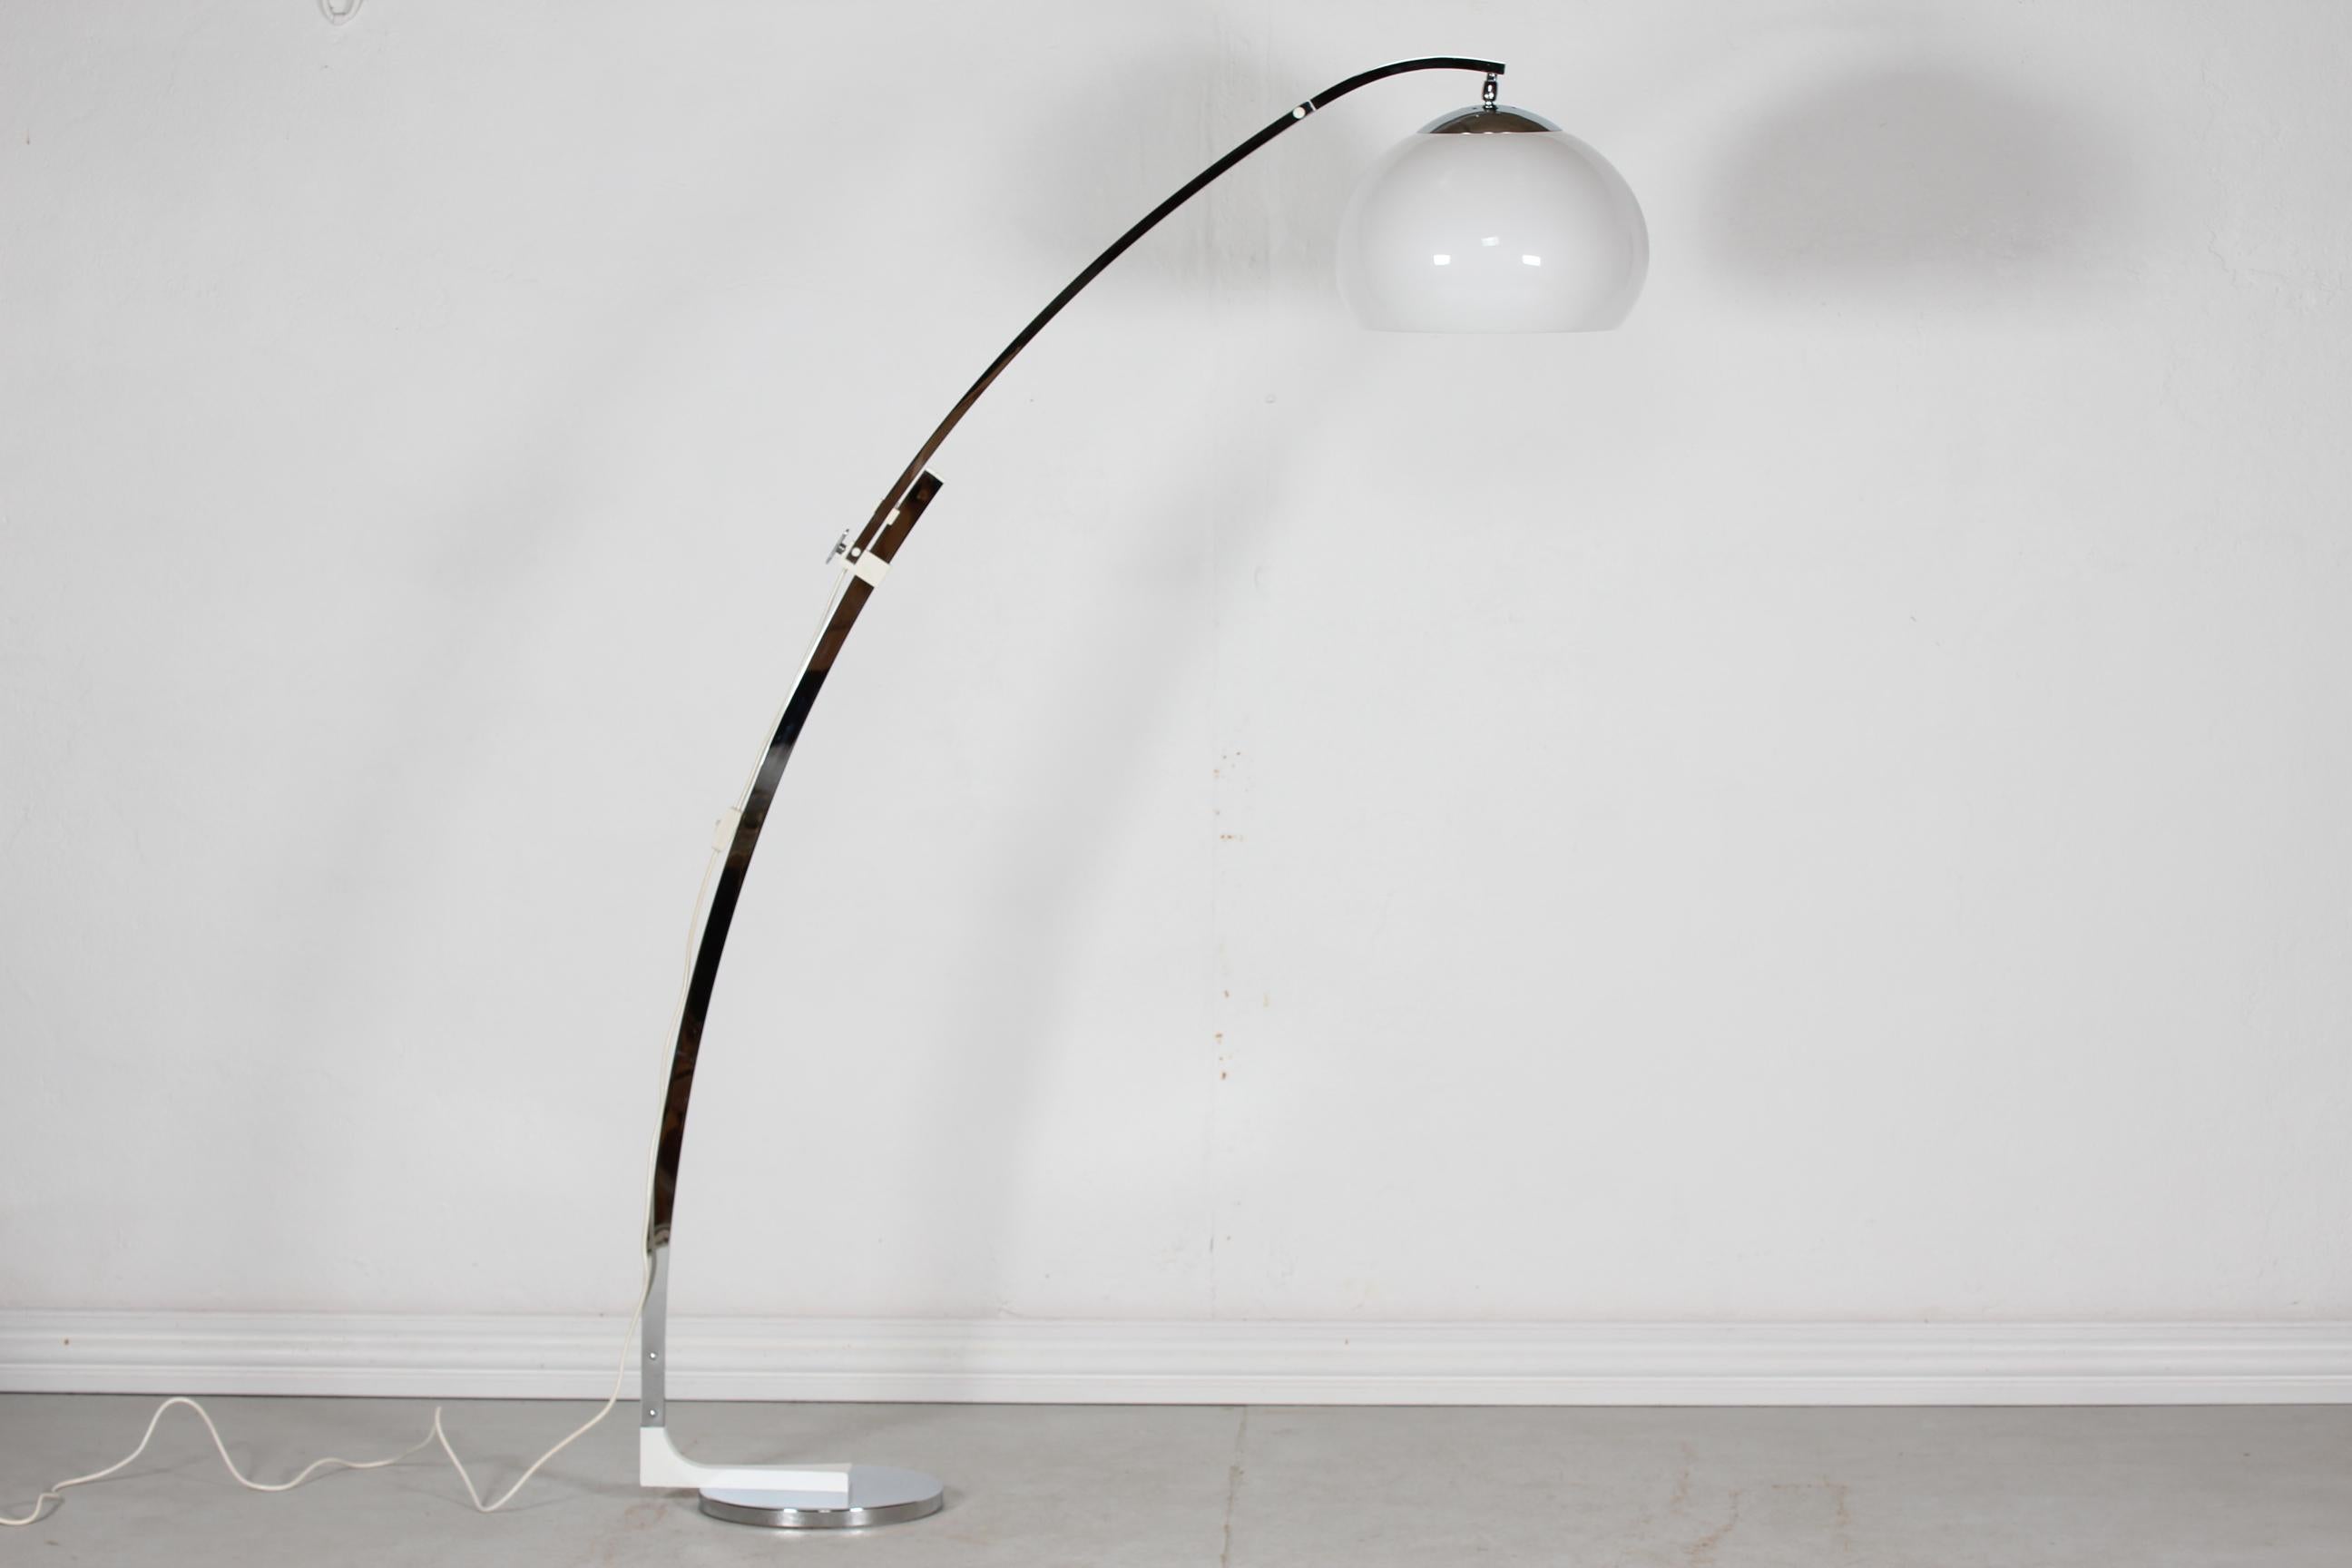 Hohe italienische Stehlampe von Goffredo Reggiani, hergestellt in den 1960er Jahren für das Studio Reggiani in Italien.

Die bogenförmige Stehleuchte hat einen langen, höhenverstellbaren Arm aus verchromtem Metall und weiß lackiertem Metall. 
Der